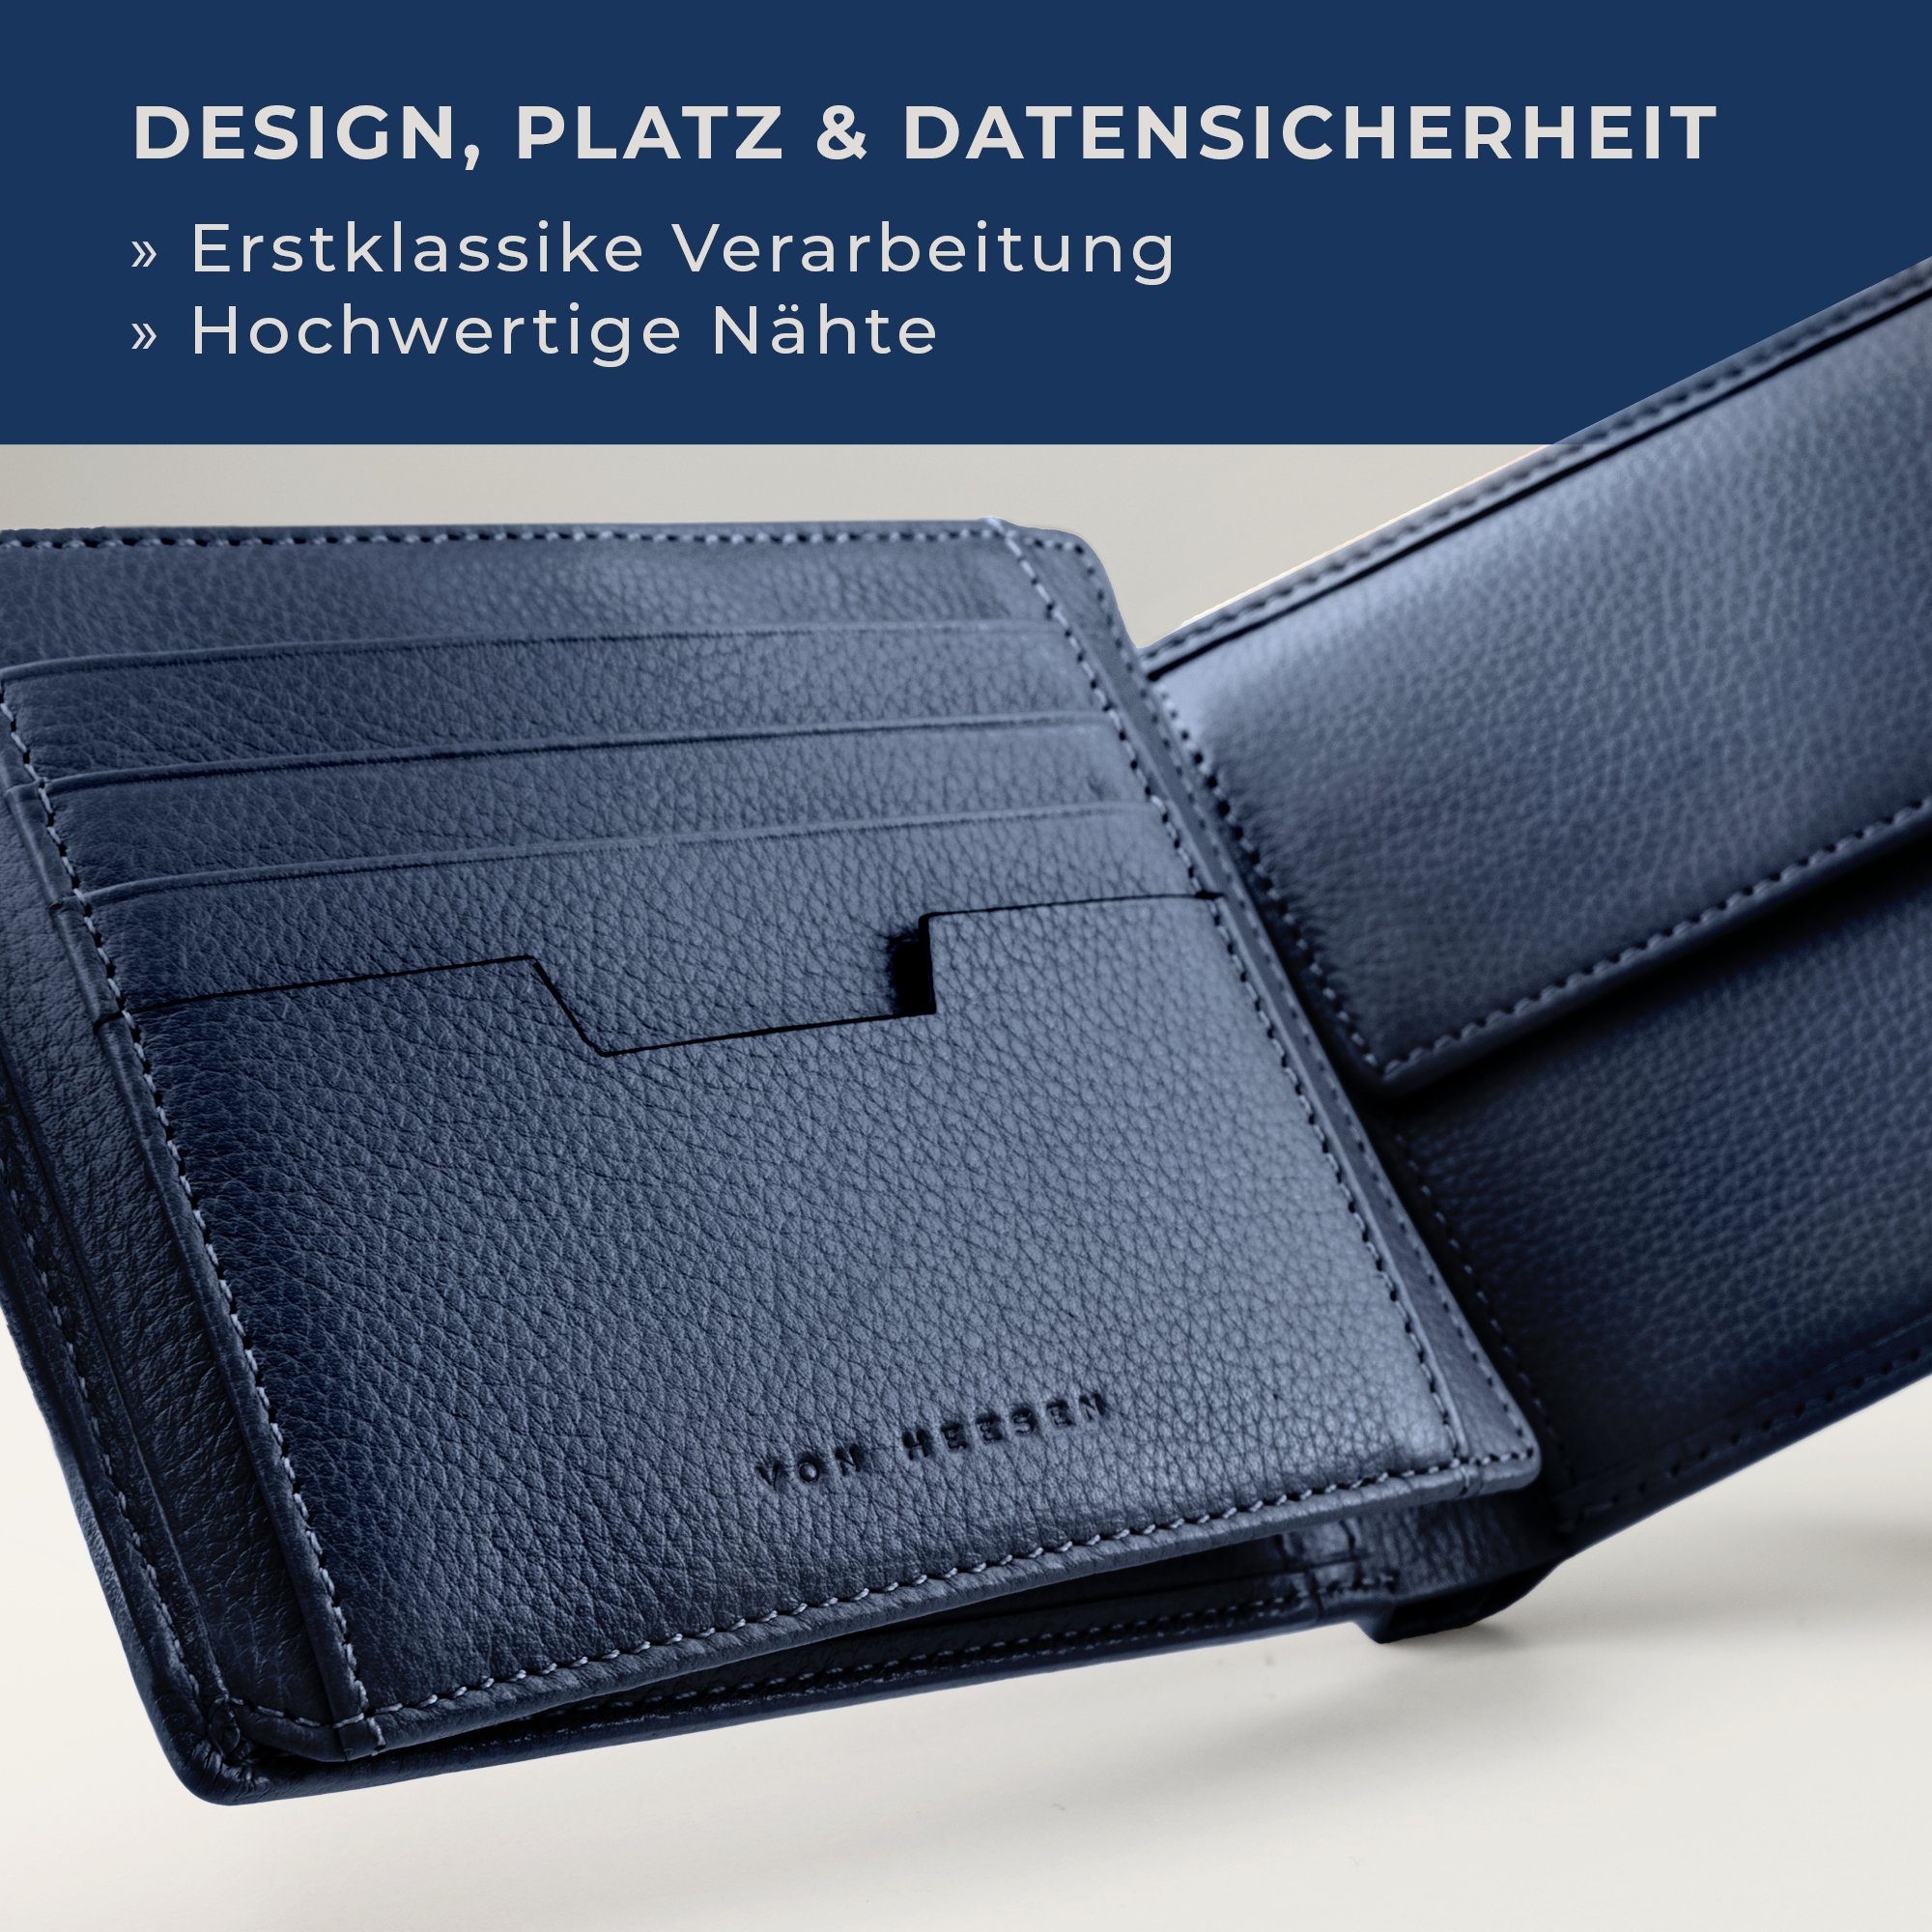 VON HEESEN & Blau Geldbörse Geschenkbox 13 Portemonnaie Kartenfächer, inkl. Geldbeutel RFID-Schutz mit